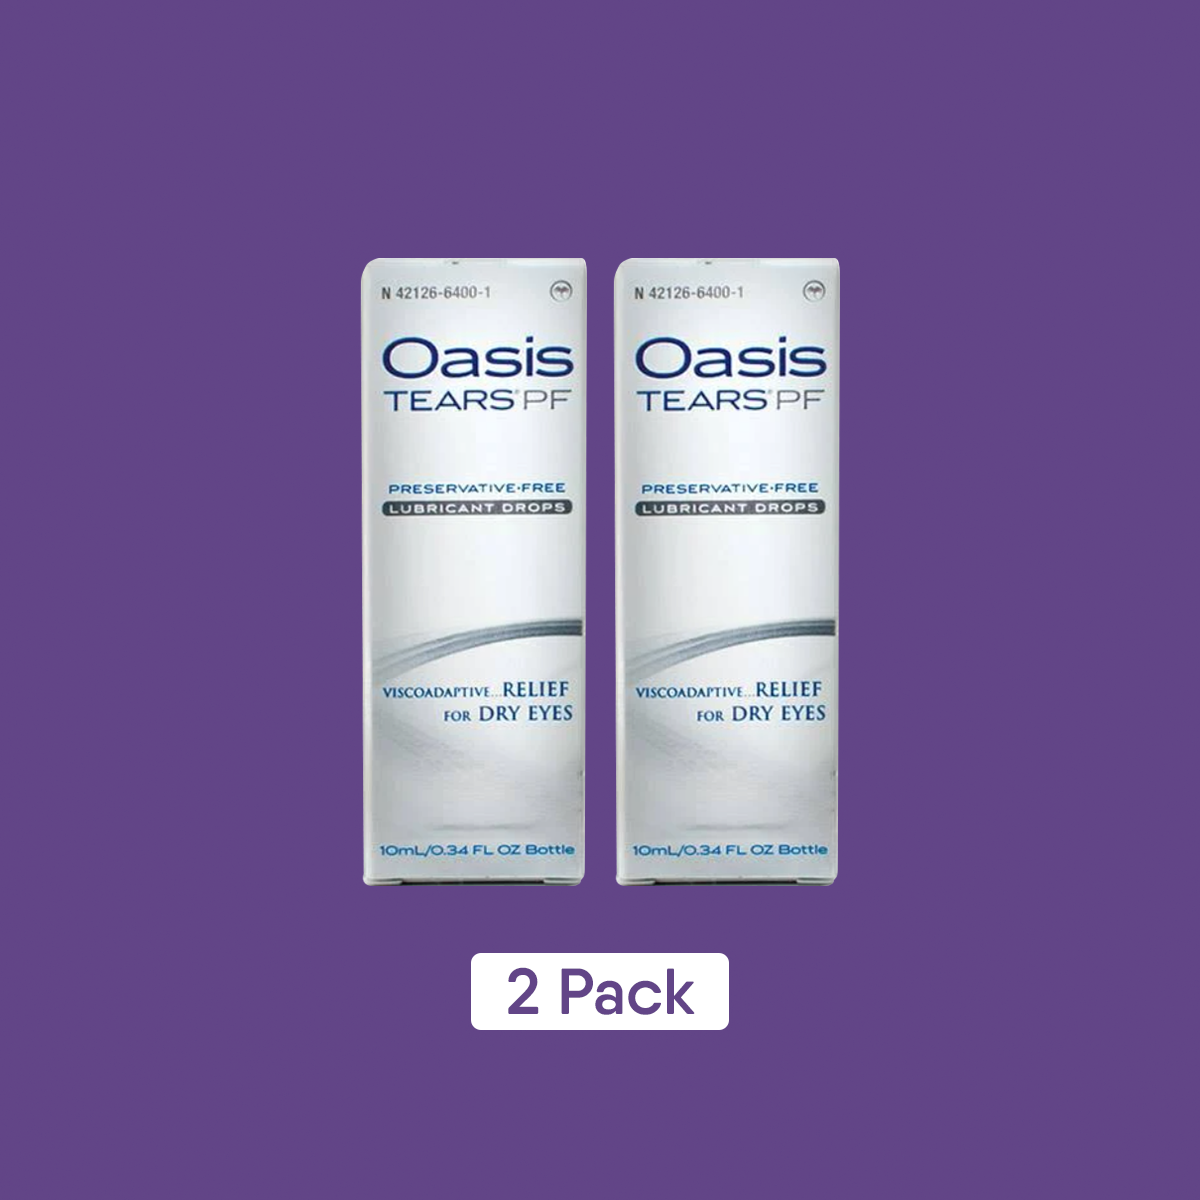 Oasis Tears Preservative-Free Eye Drops (Multi-drop Bottle) 2-Pack 600 drops